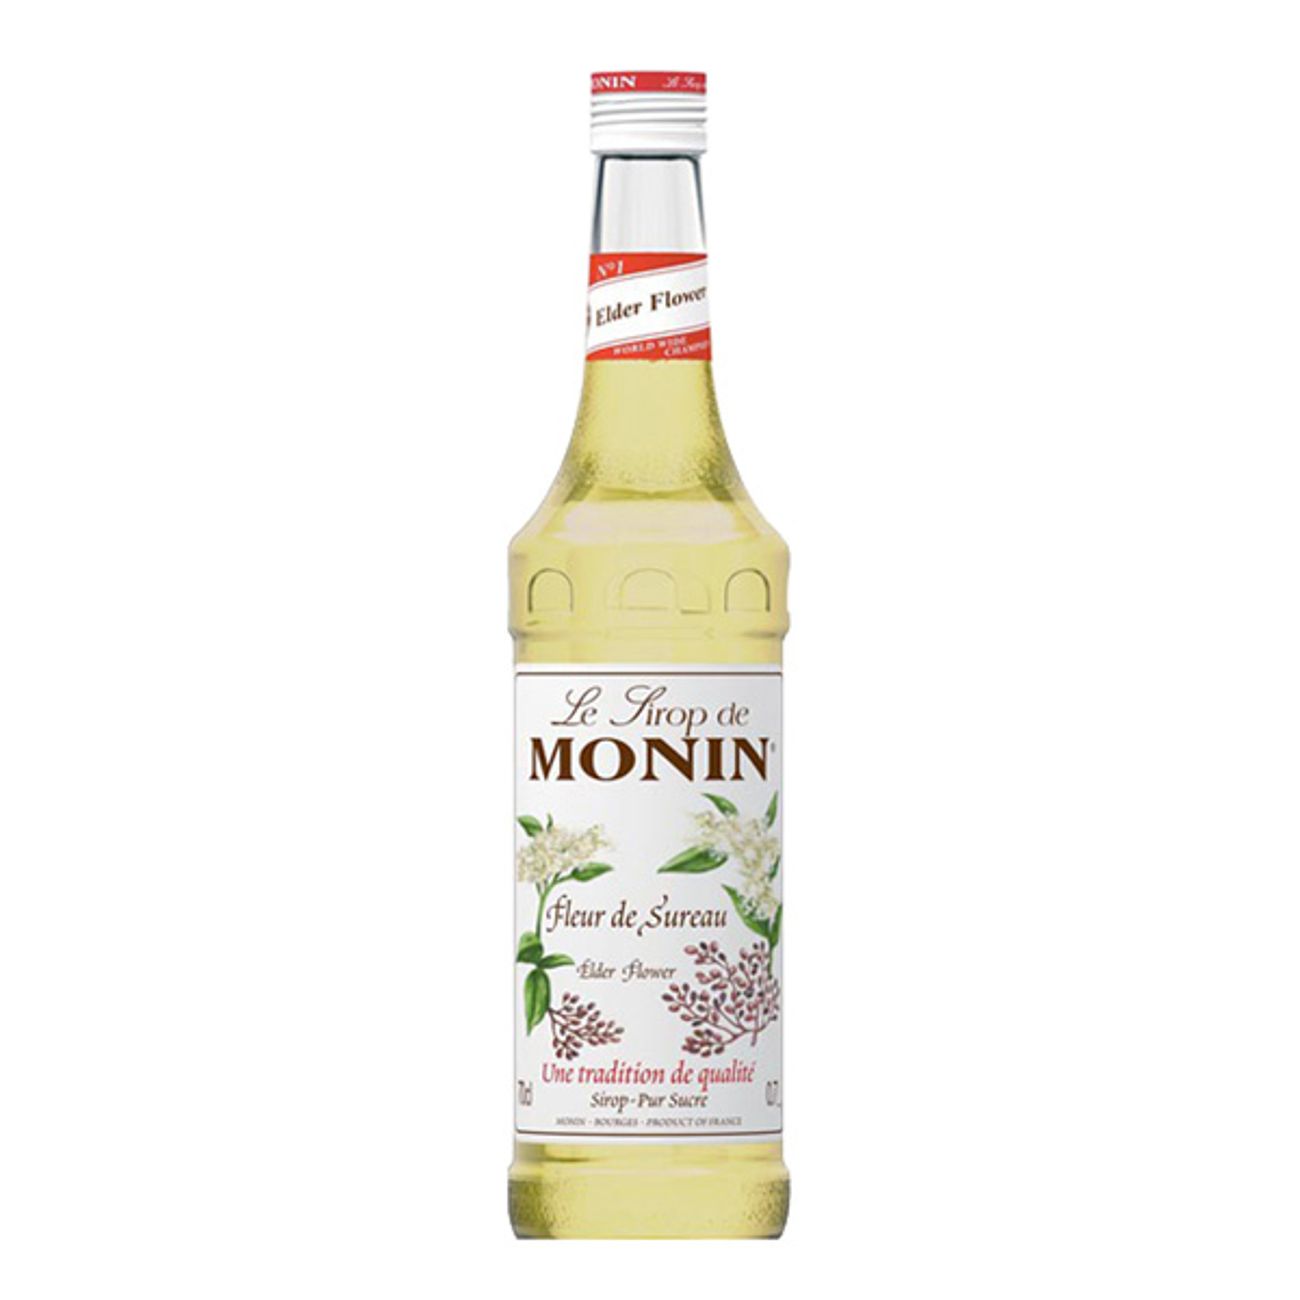 monin-flader-drinkmix-1